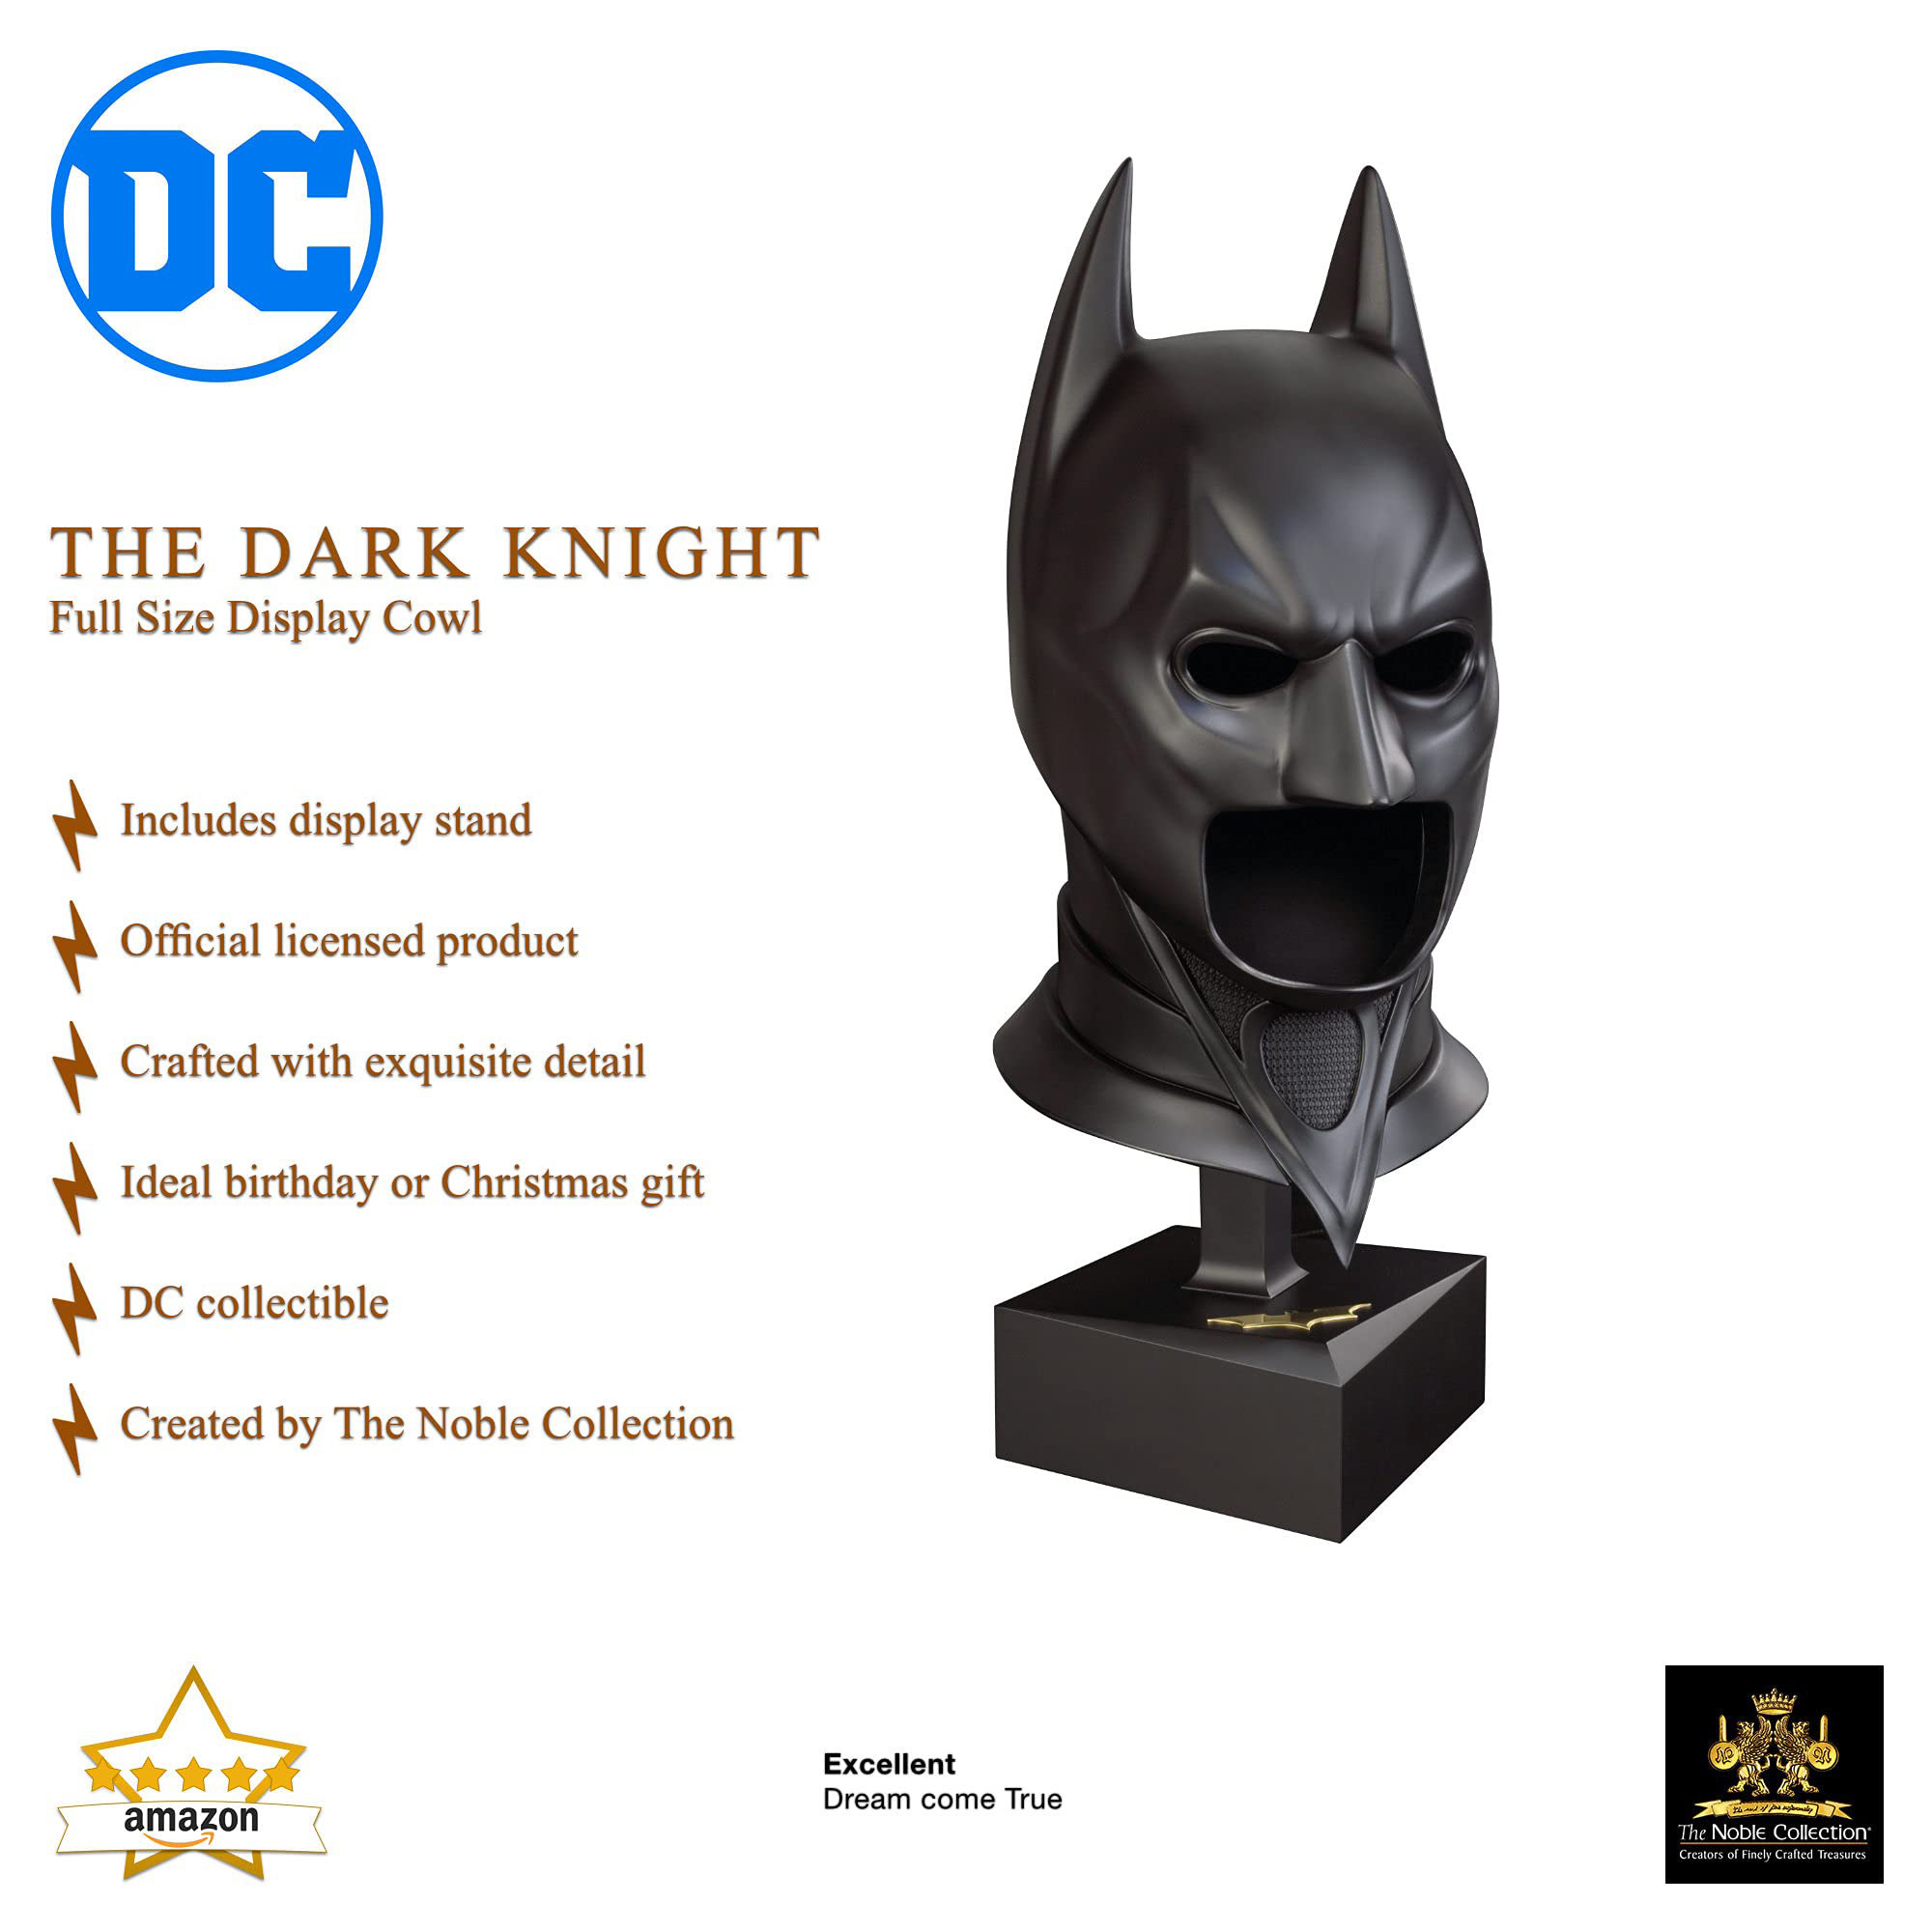 Maschera da collezione Batman con espositore - DC Comics